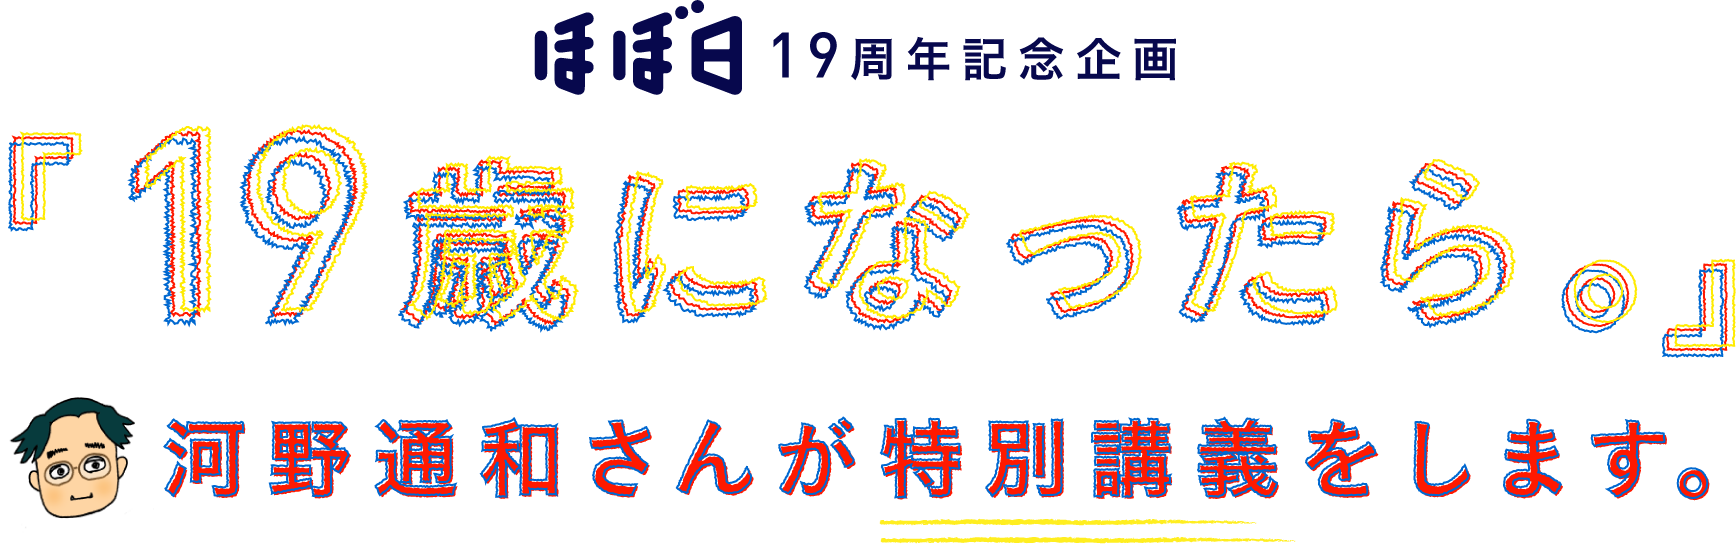 ほぼ日19周年記念企画
		「19歳になったら。」
		河野通和さんが特別講義をします。